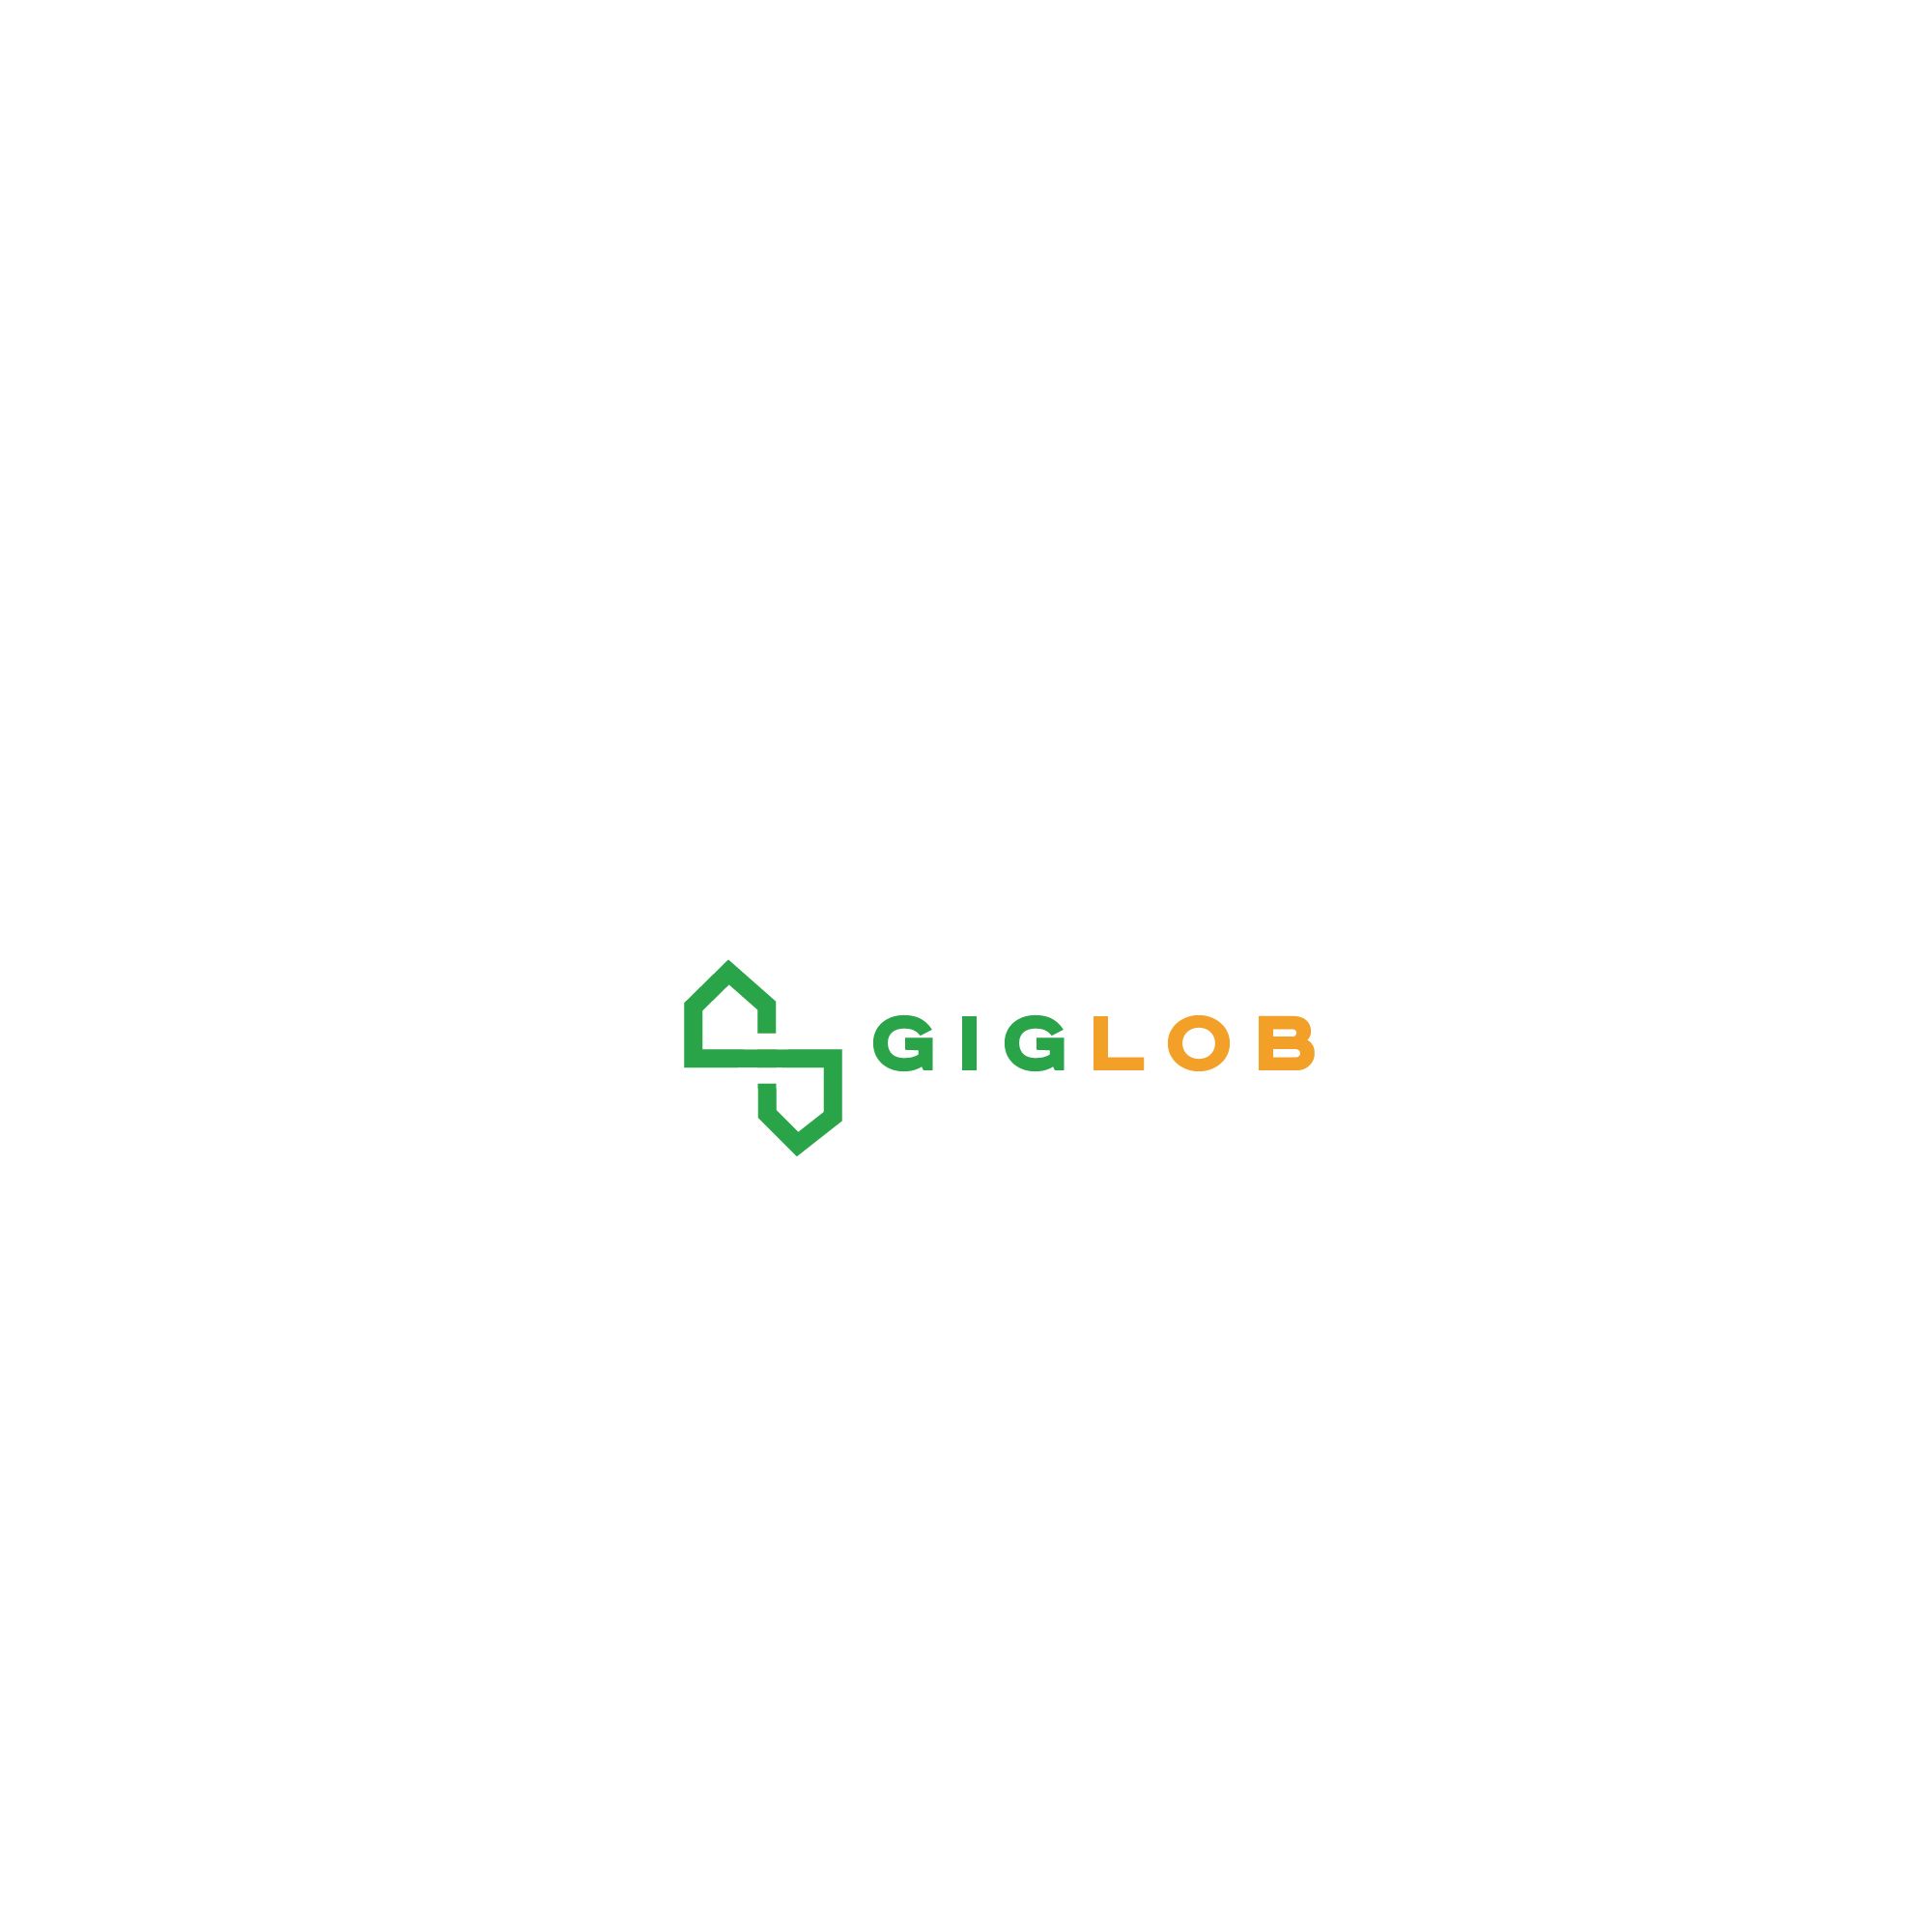 Логотип для Giglob - дизайнер SmolinDenis